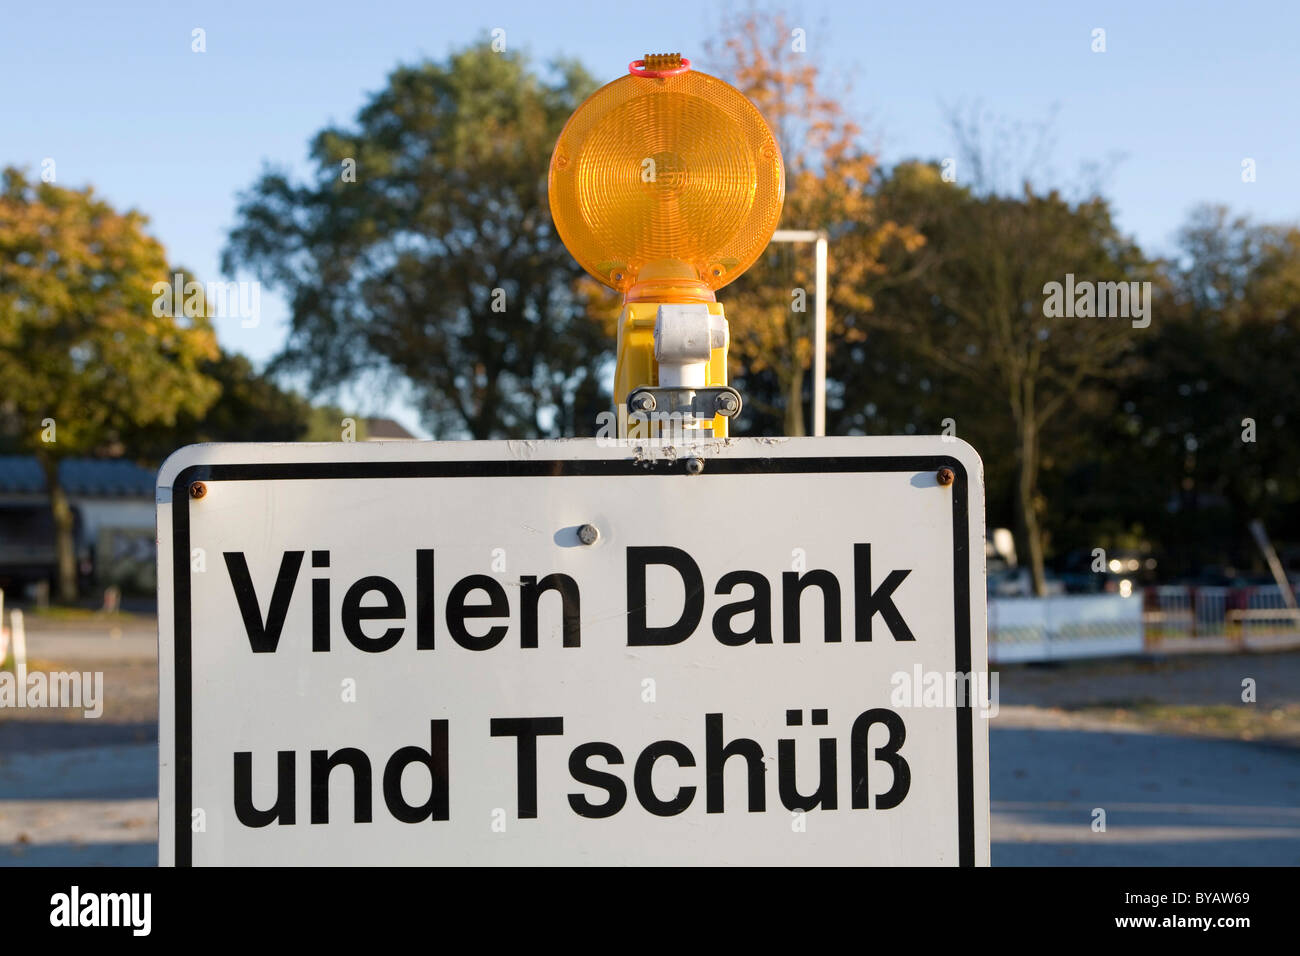 Zeichen, Vielen Dank Und Tschuess, Deutsch für Danke und auf Wiedersehen, Hamburg, Deutschland, Europa Stockfoto